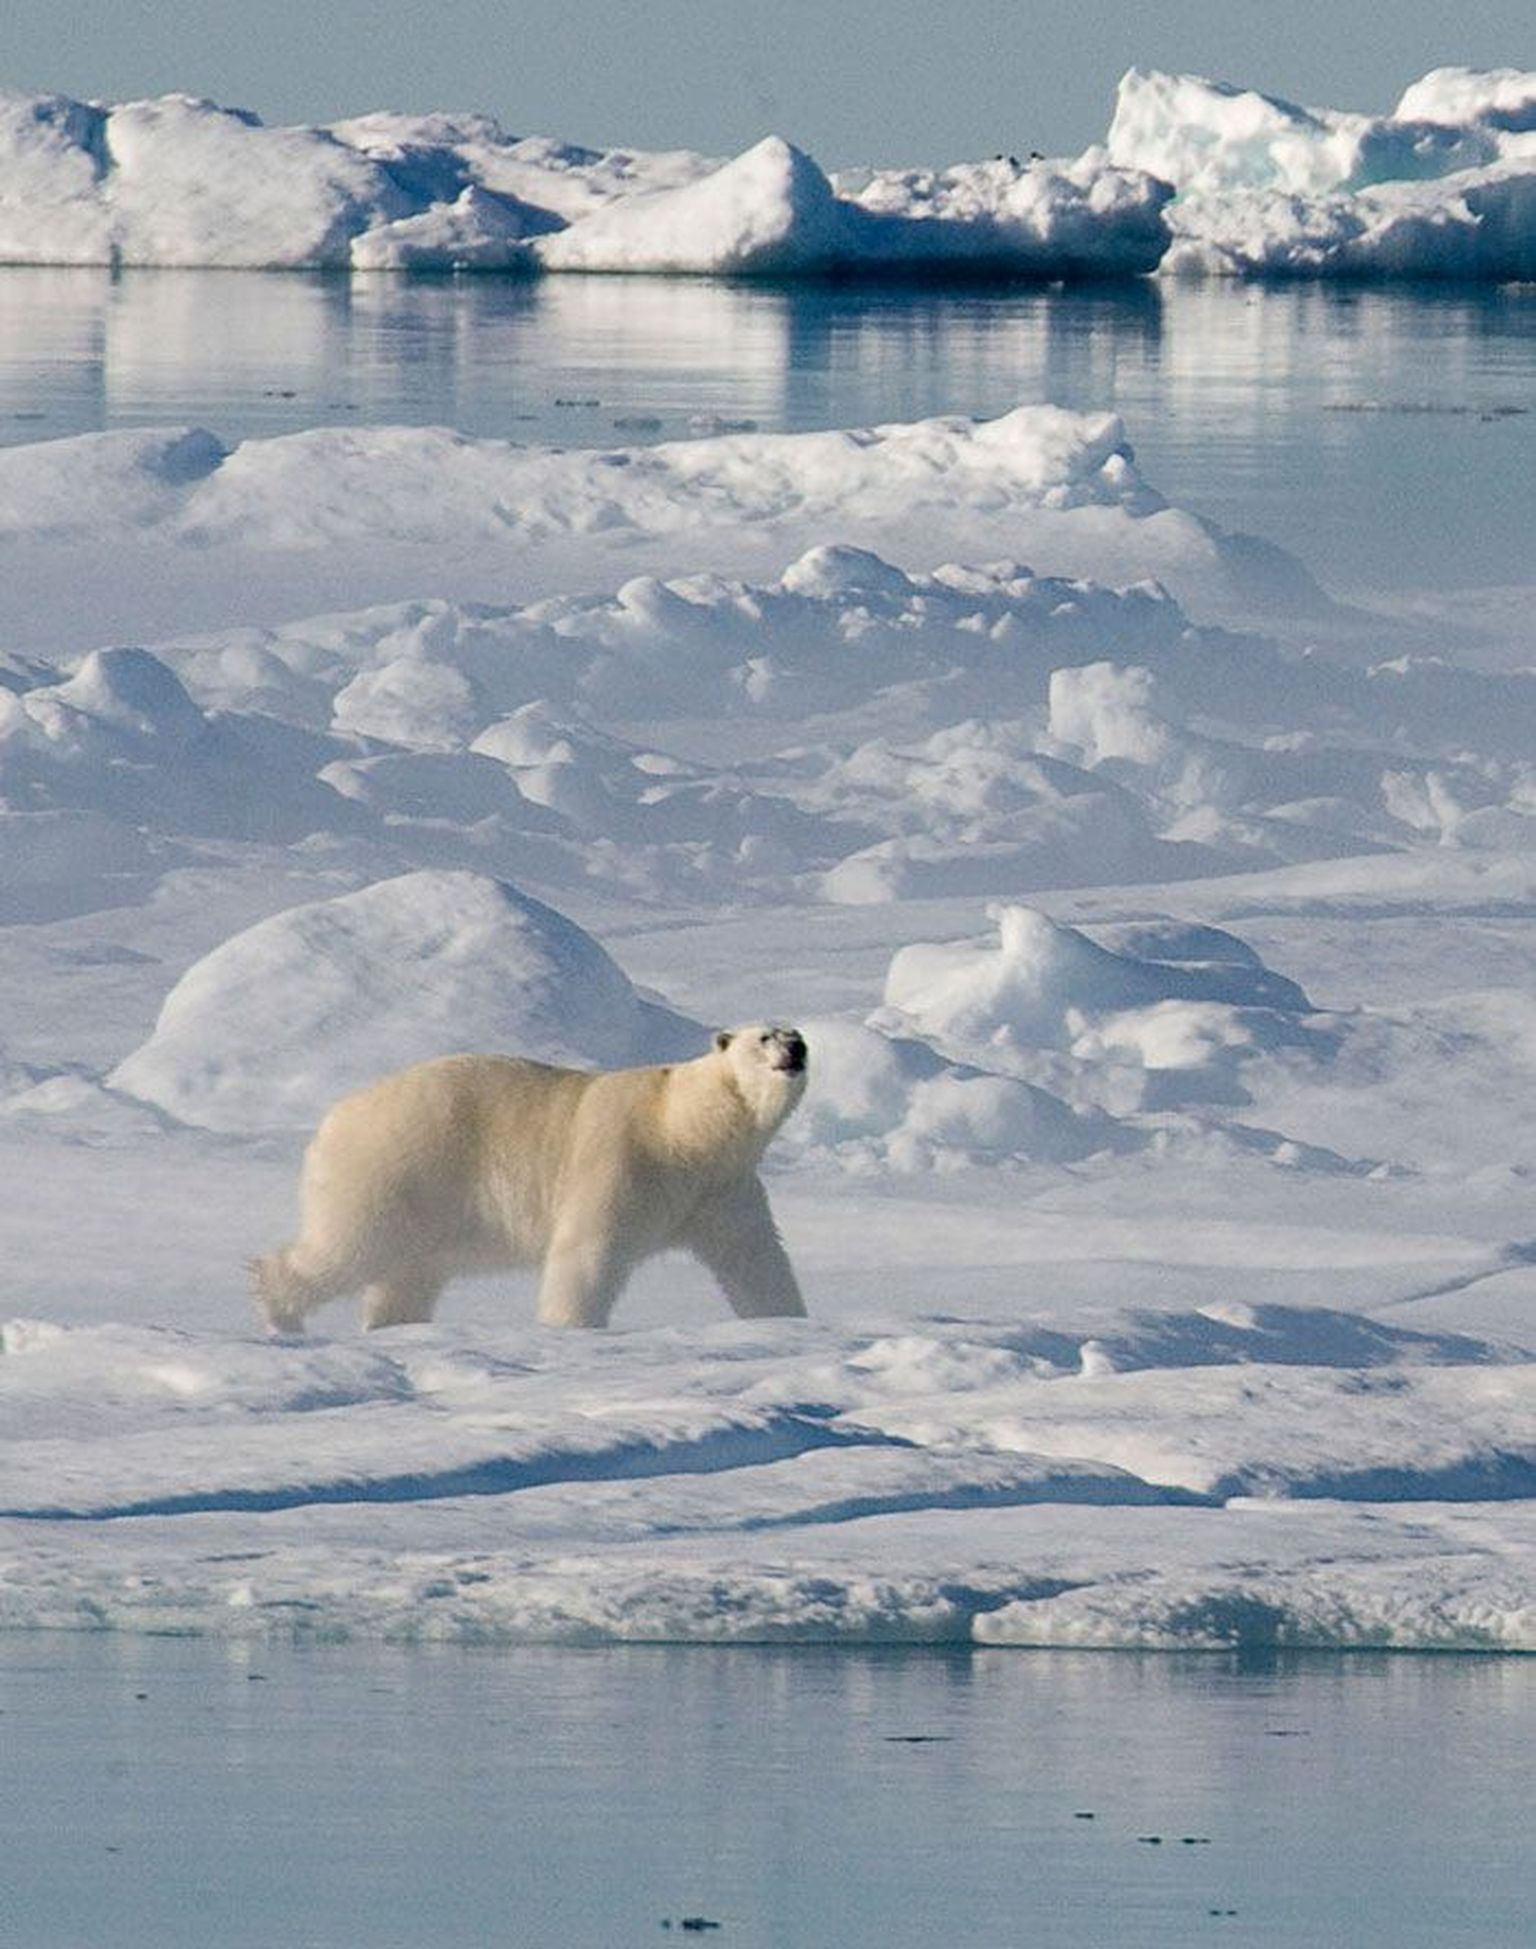 Antarktika jääkilbi mõõtmed on kogu usaldusväärse mõõtmisajaloo väikseimad ning see seab ohtu ka jääkarud, kes peavad ellujäämiseks elupaika vahetama.